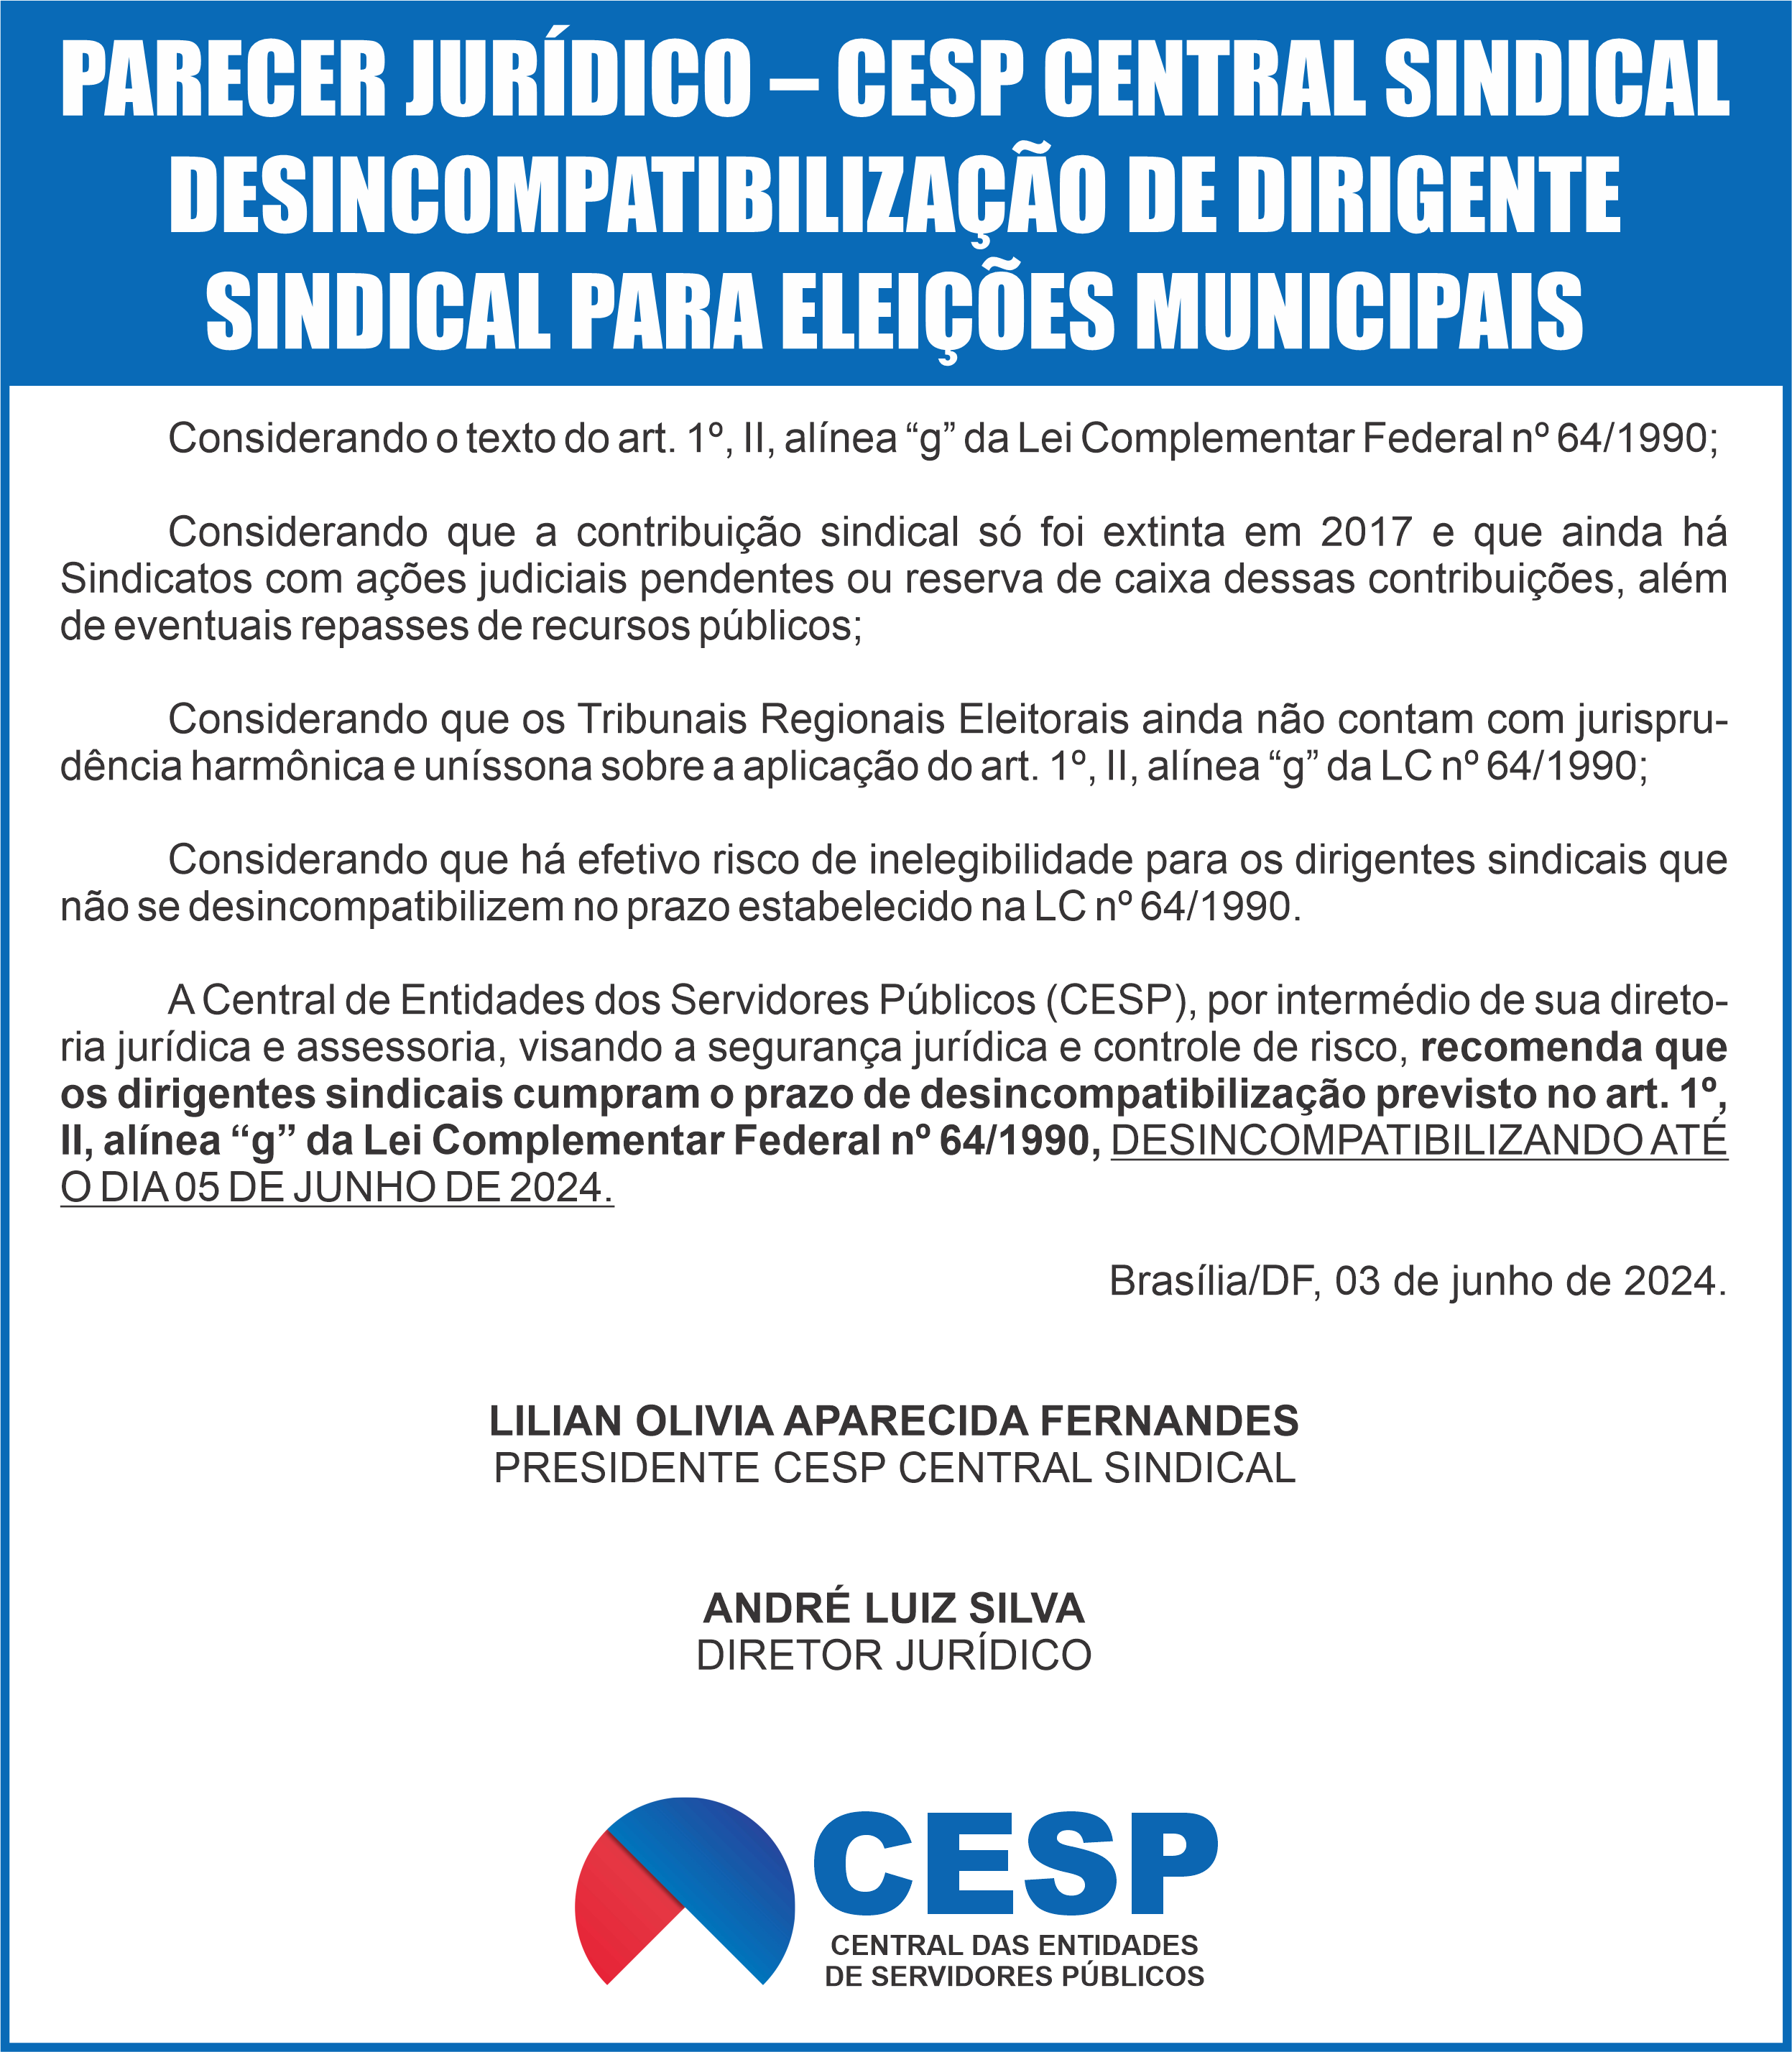 PARECER JURÍDICO – CESP CENTRAL SINDICAL -DESINCOMPATIBILIZAÇÃO DE DIRIGENTE SINDICAL PARA ELEIÇÕES MUNICIPAIS